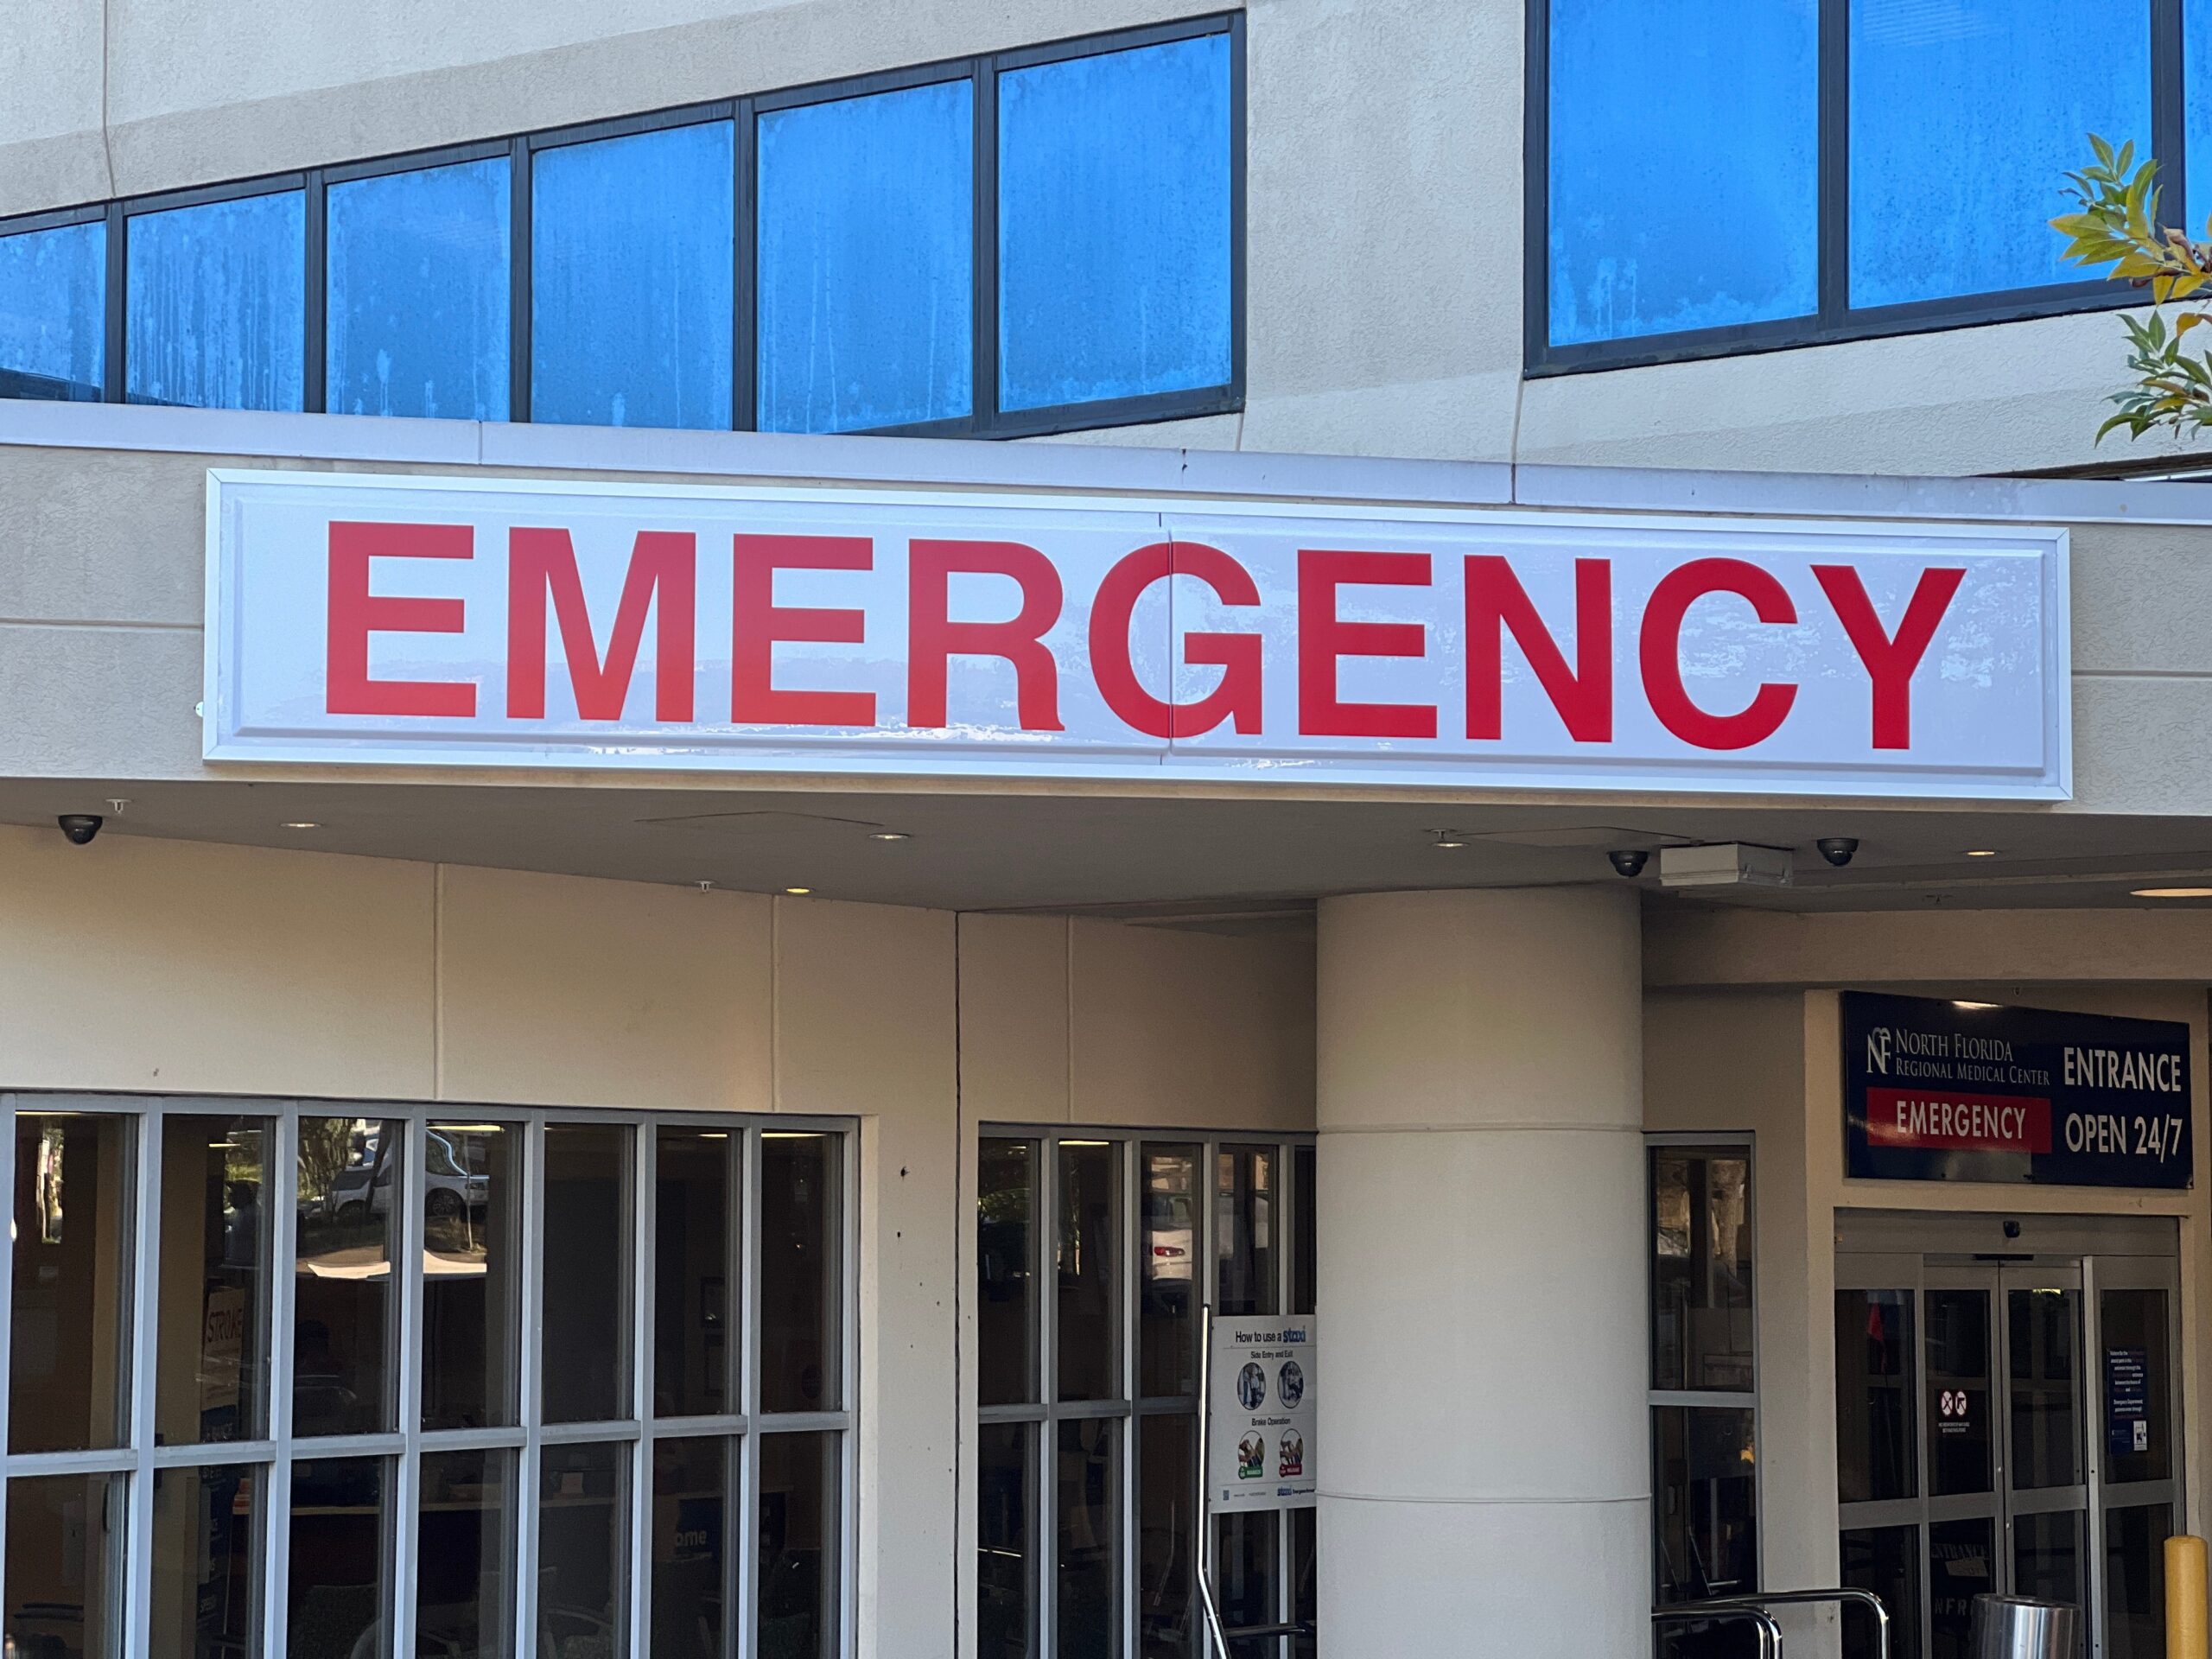 ER Emergency hospital entrance sign